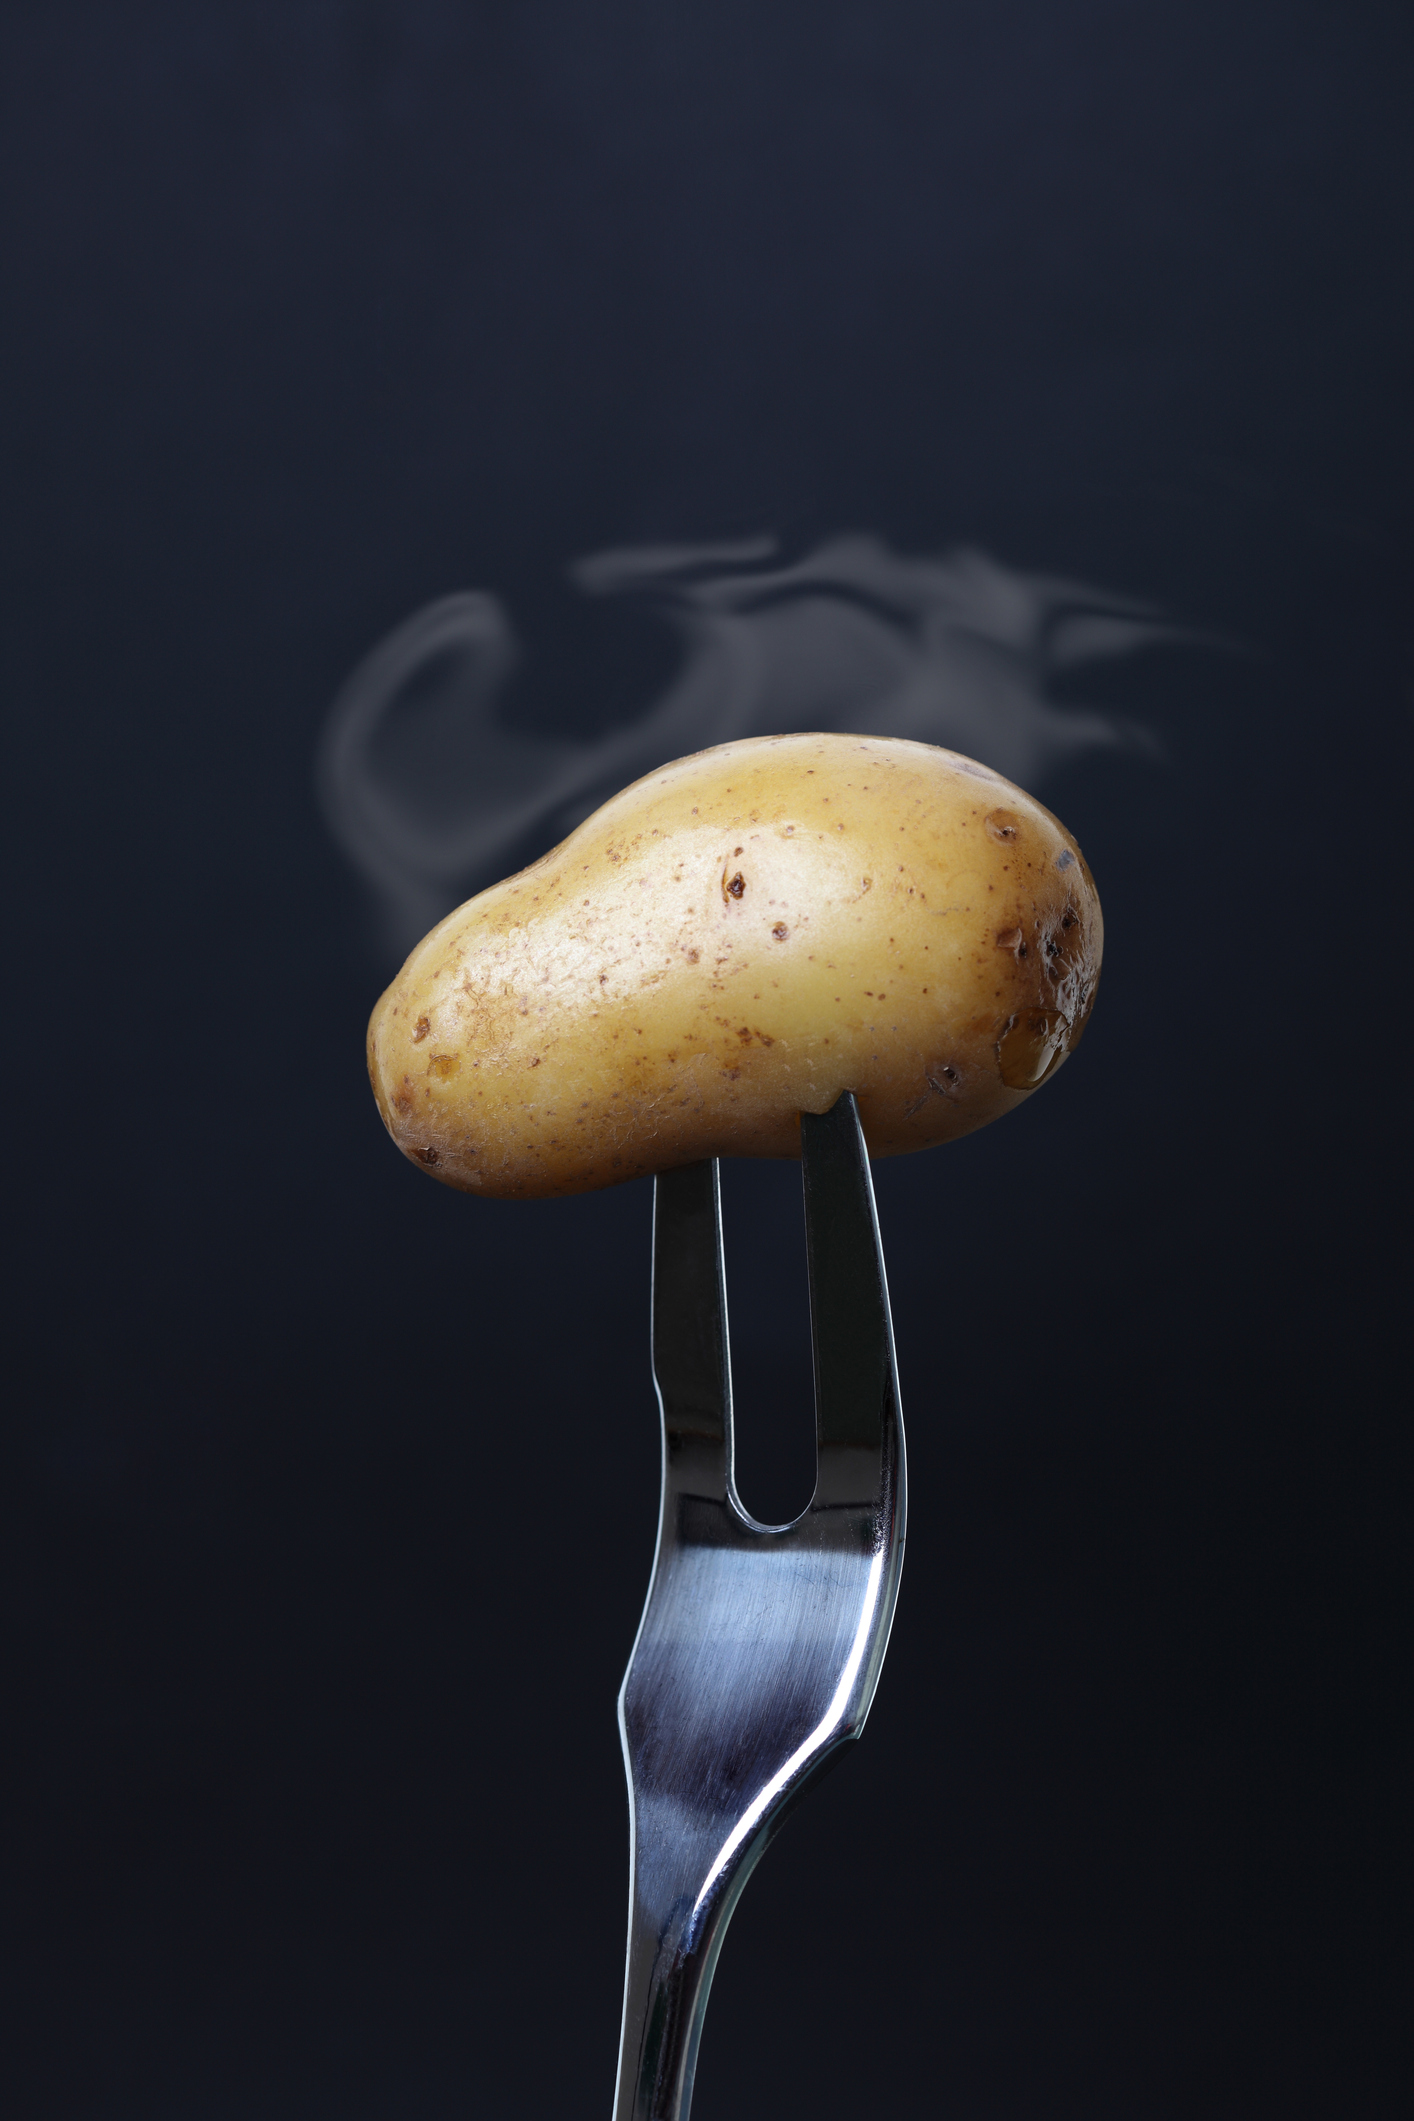 Inhalacja z ziemniaków na kaszel - domowy sposób na kaszel, katar i  infekcje | Ofeminin